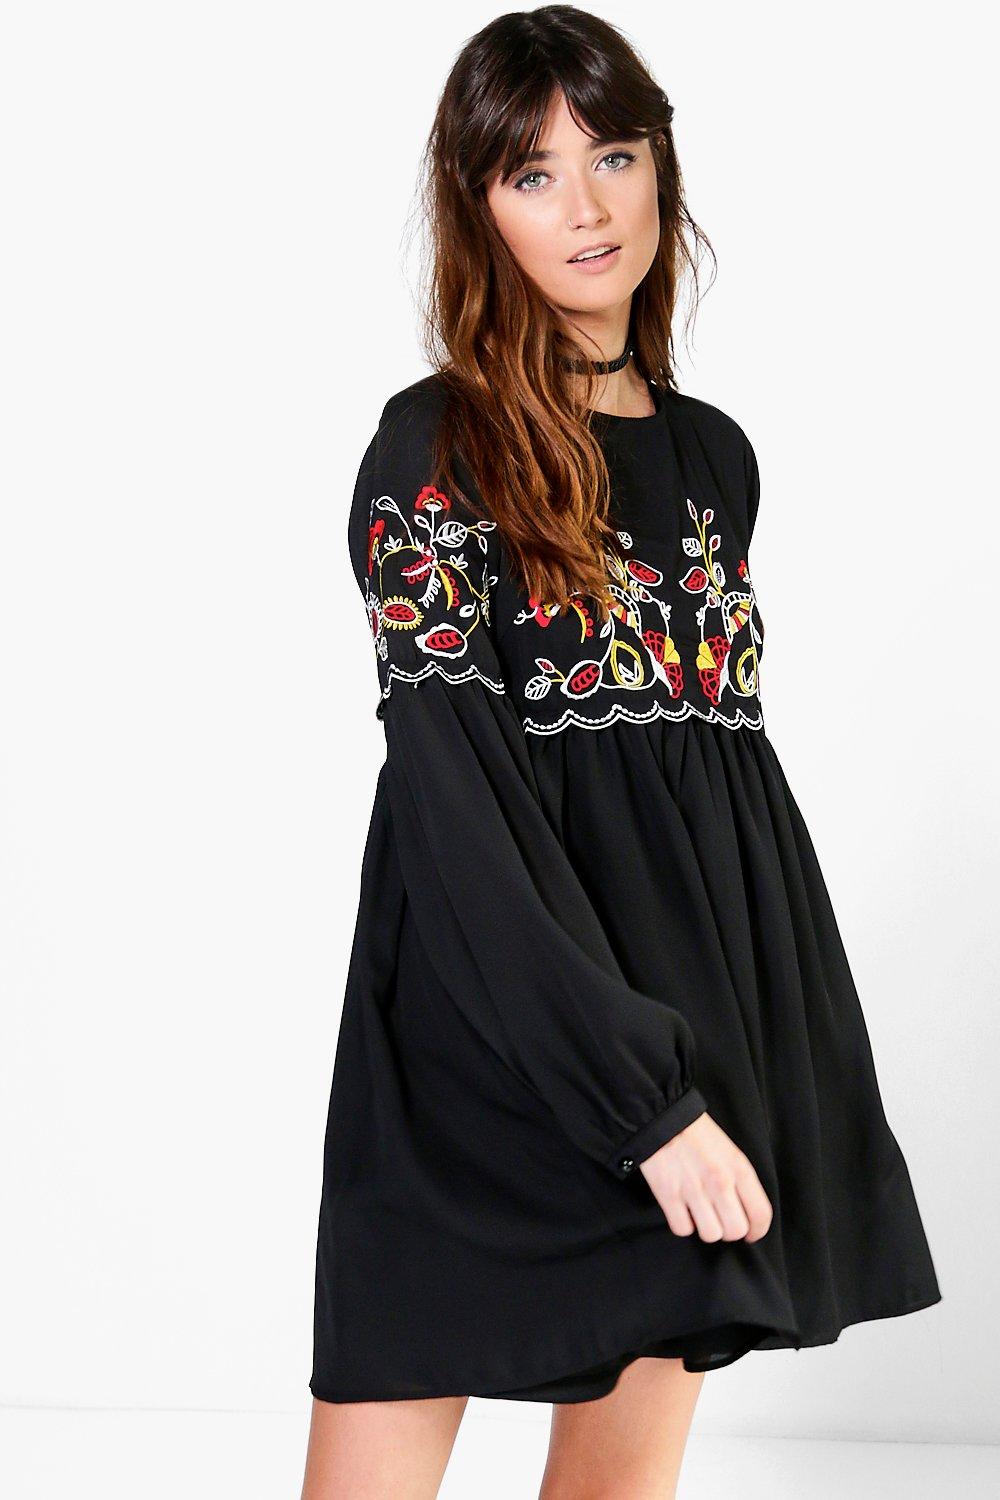 black embroidered smock dress